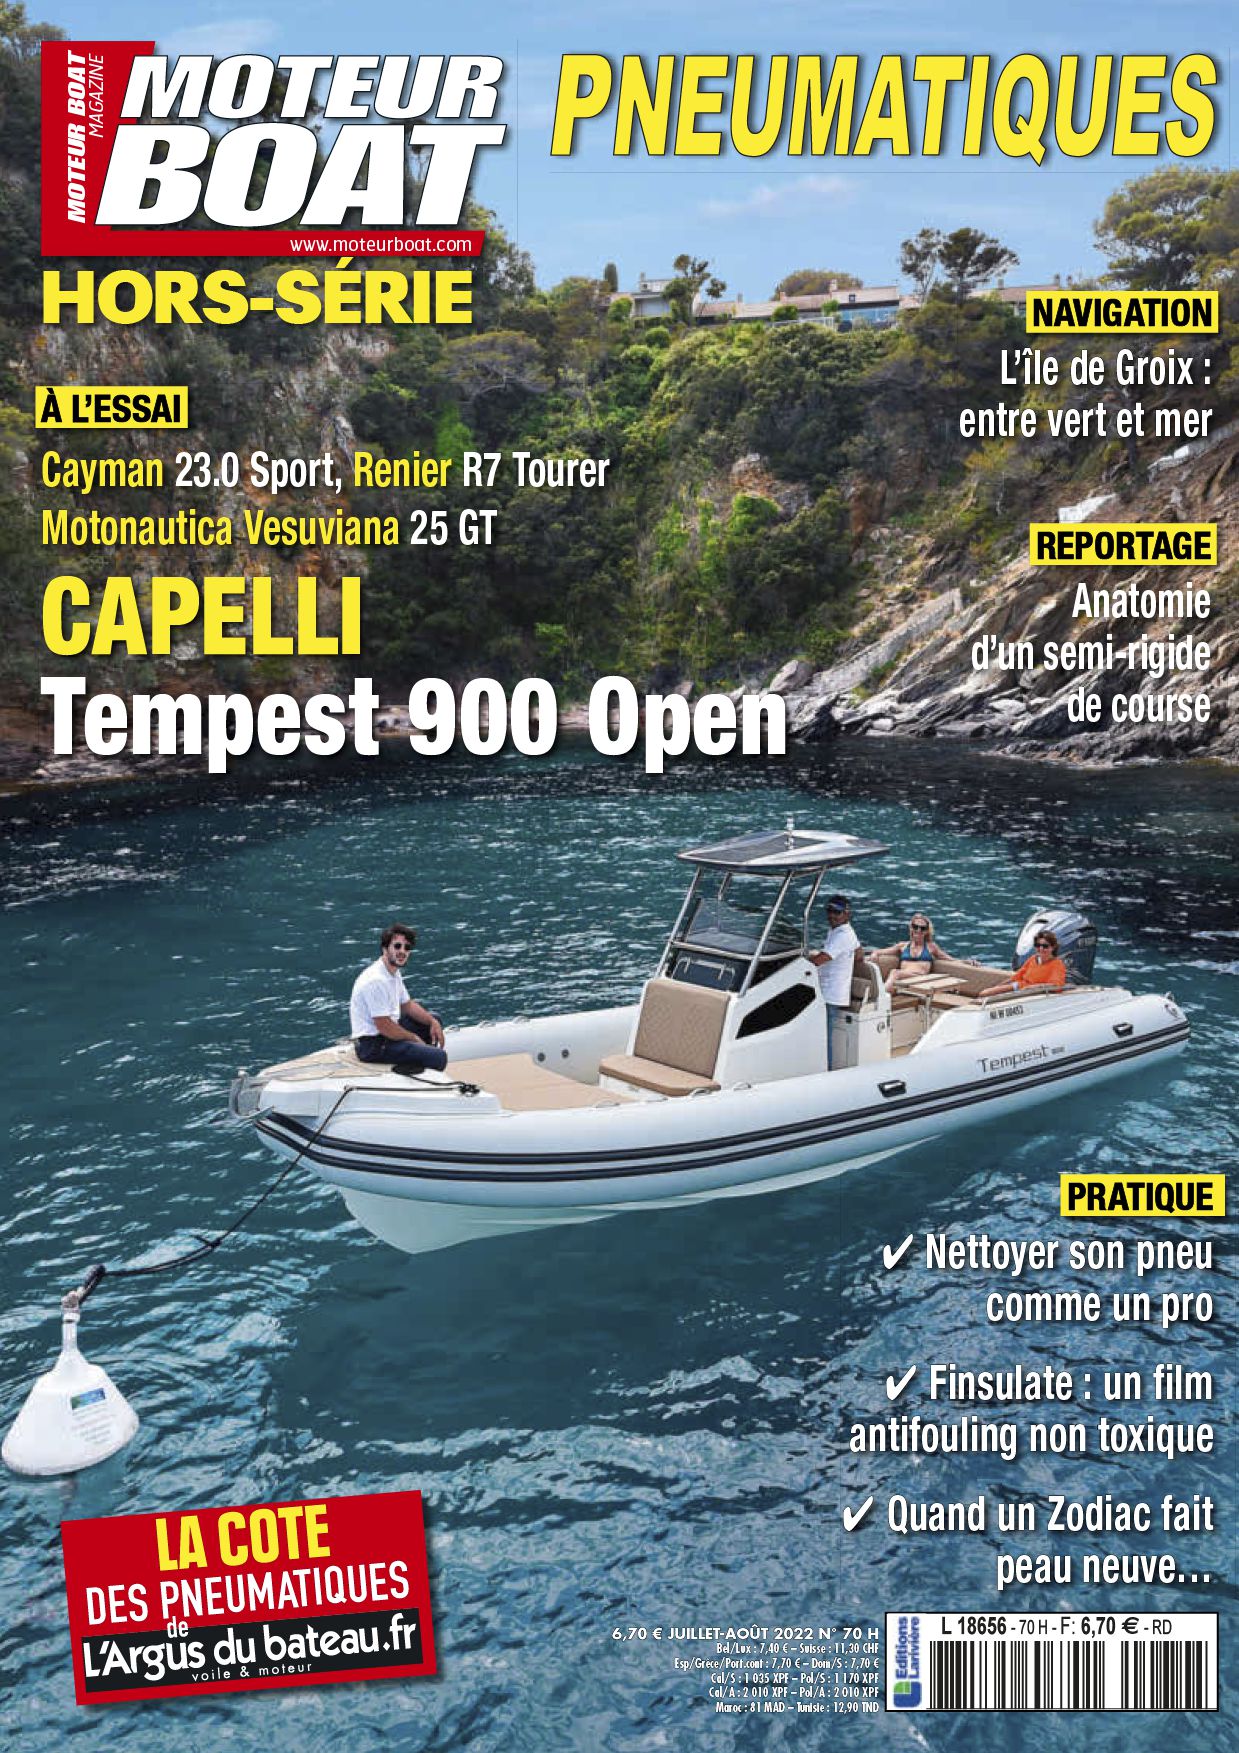 Abonnement magazine Hs moteur boat - Boutique Larivière